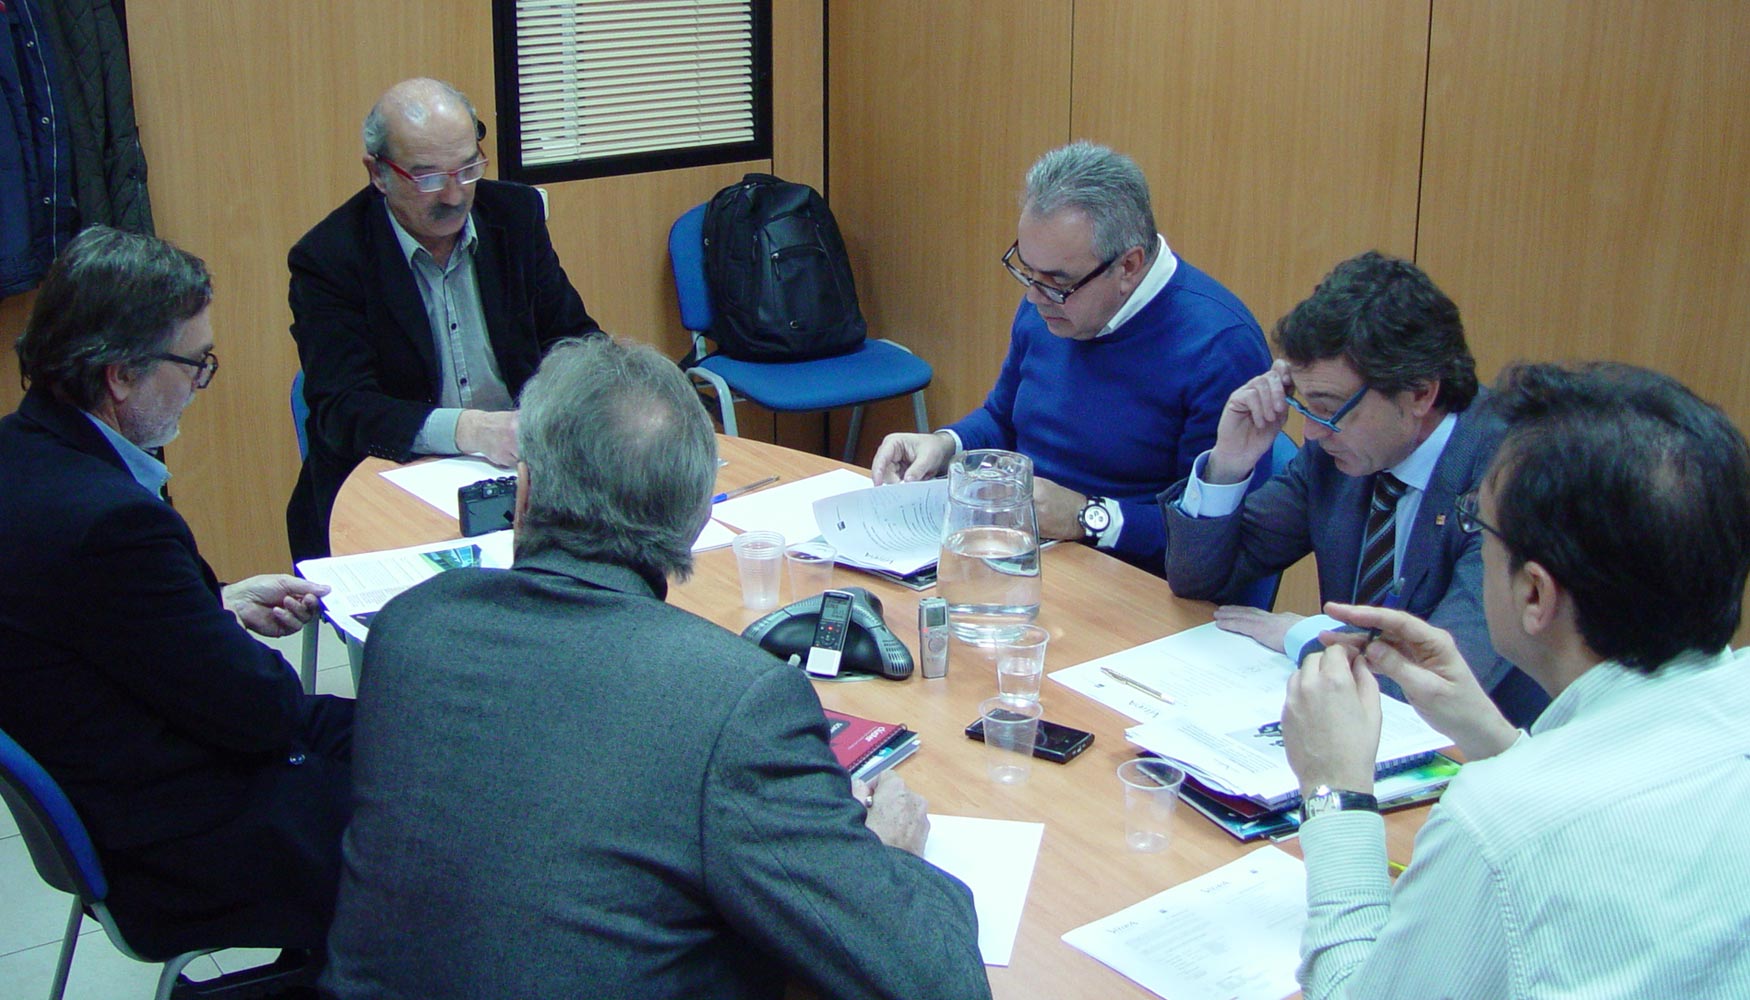 Mesa de opinin sobre la evolucin de la industria del vidrio, convocada por Vtrea en las instalaciones de Grupo Nova gora...